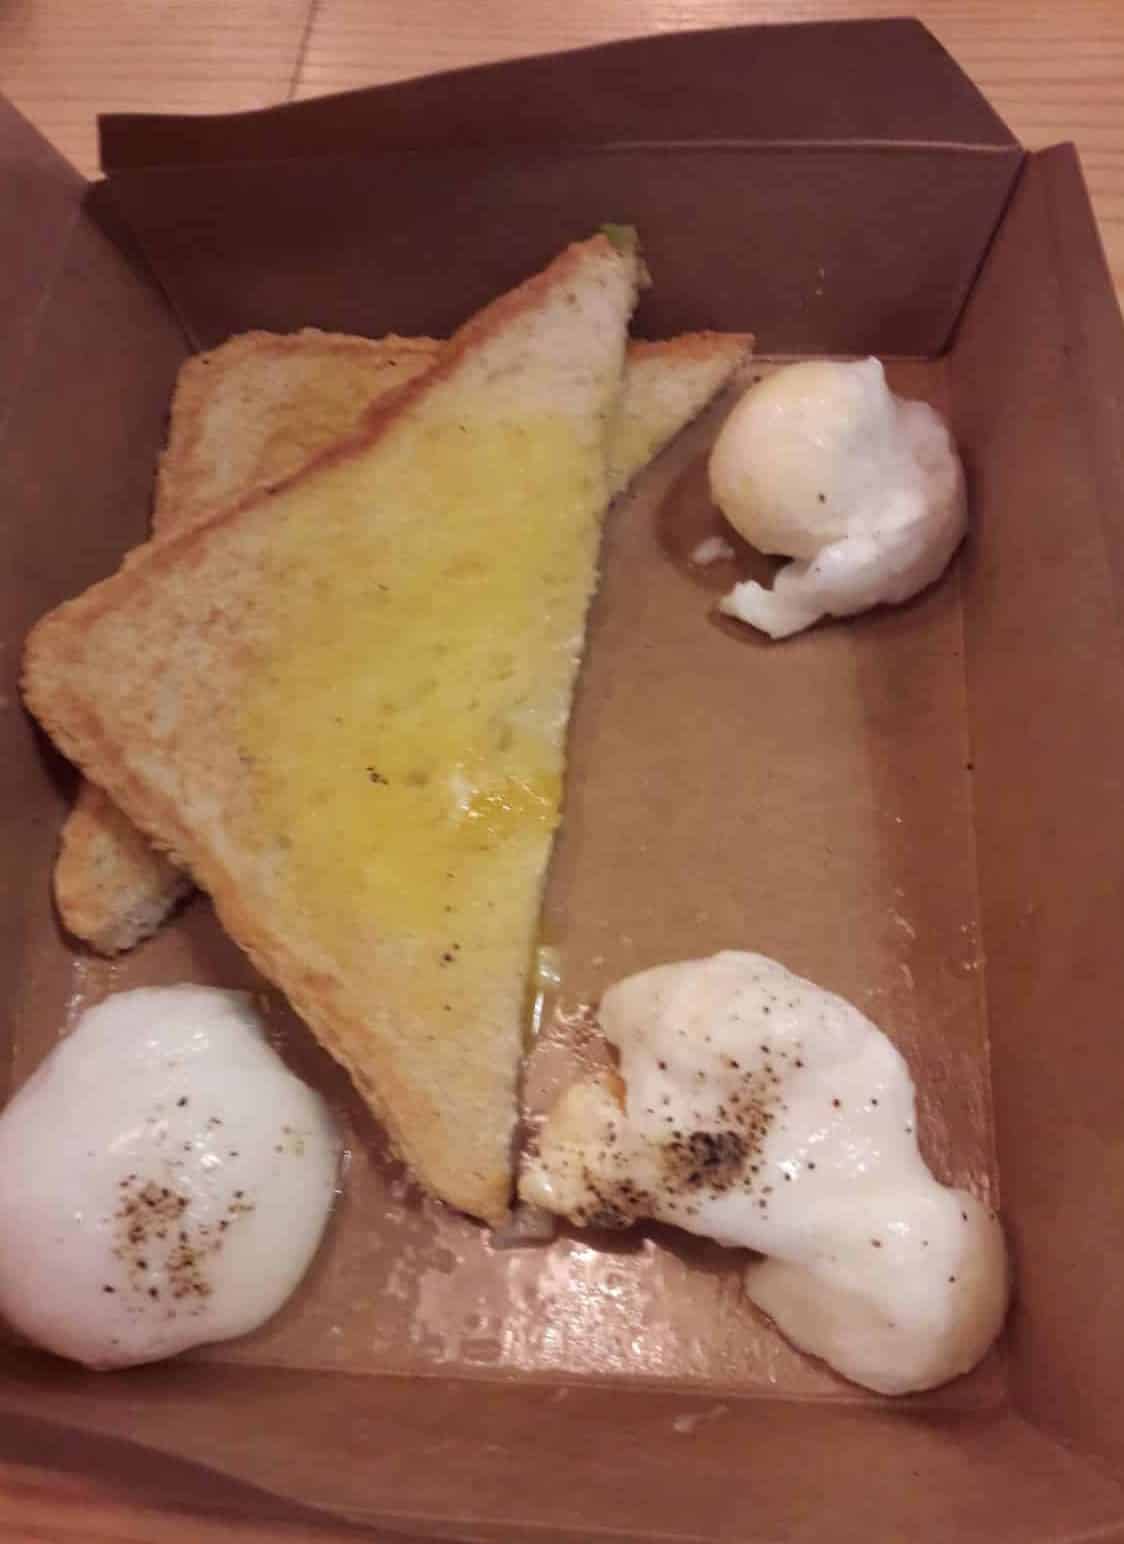 На что похож худший завтрак в аэропорту? Вот, как выглядят яйца возле тоста за £5,70